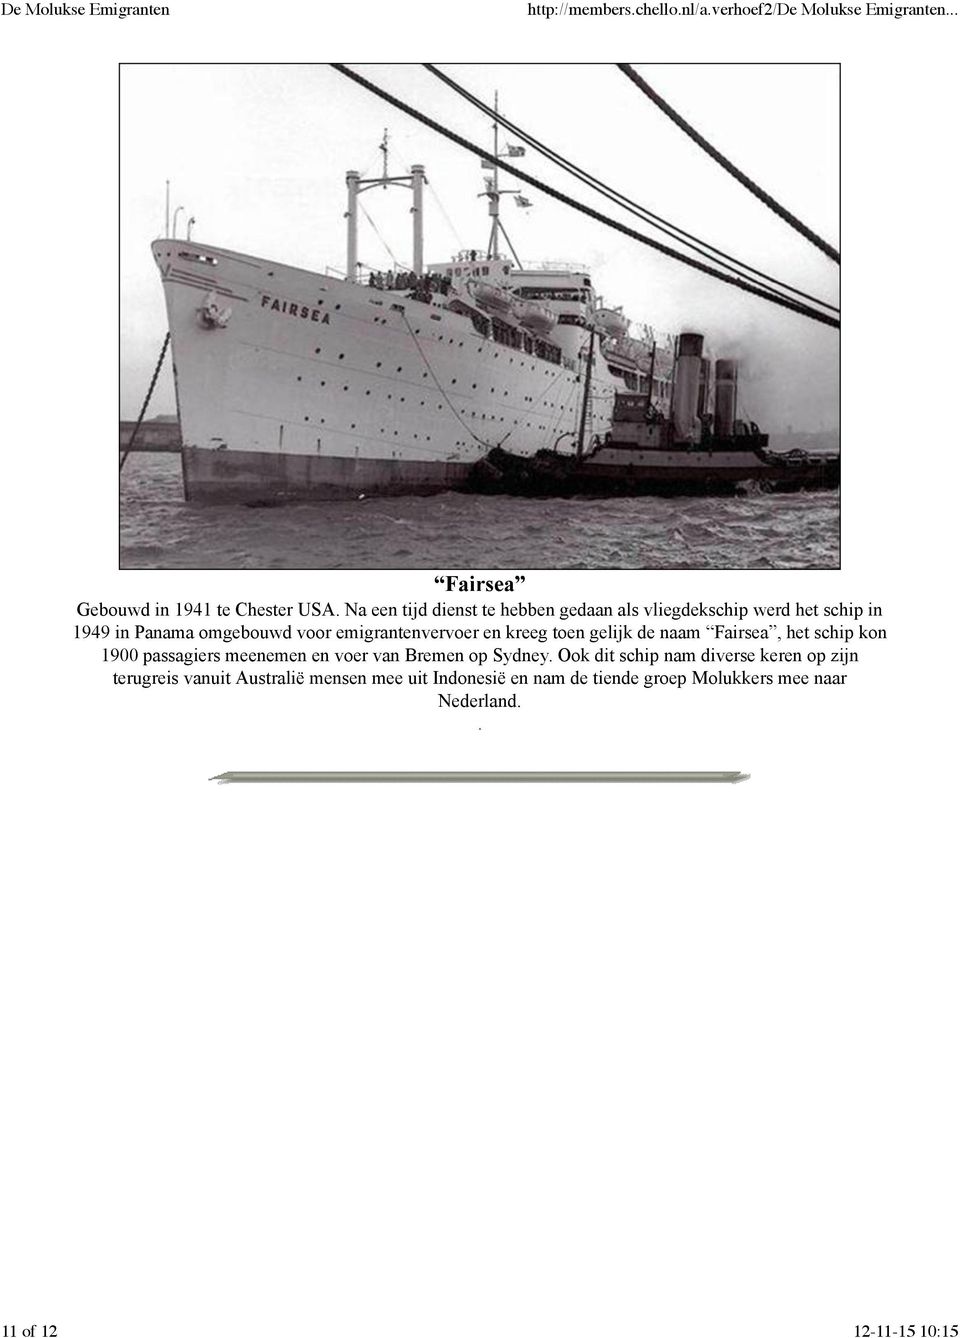 emigrantenvervoer en kreeg toen gelijk de naam Fairsea, het schip kon 1900 passagiers meenemen en voer van